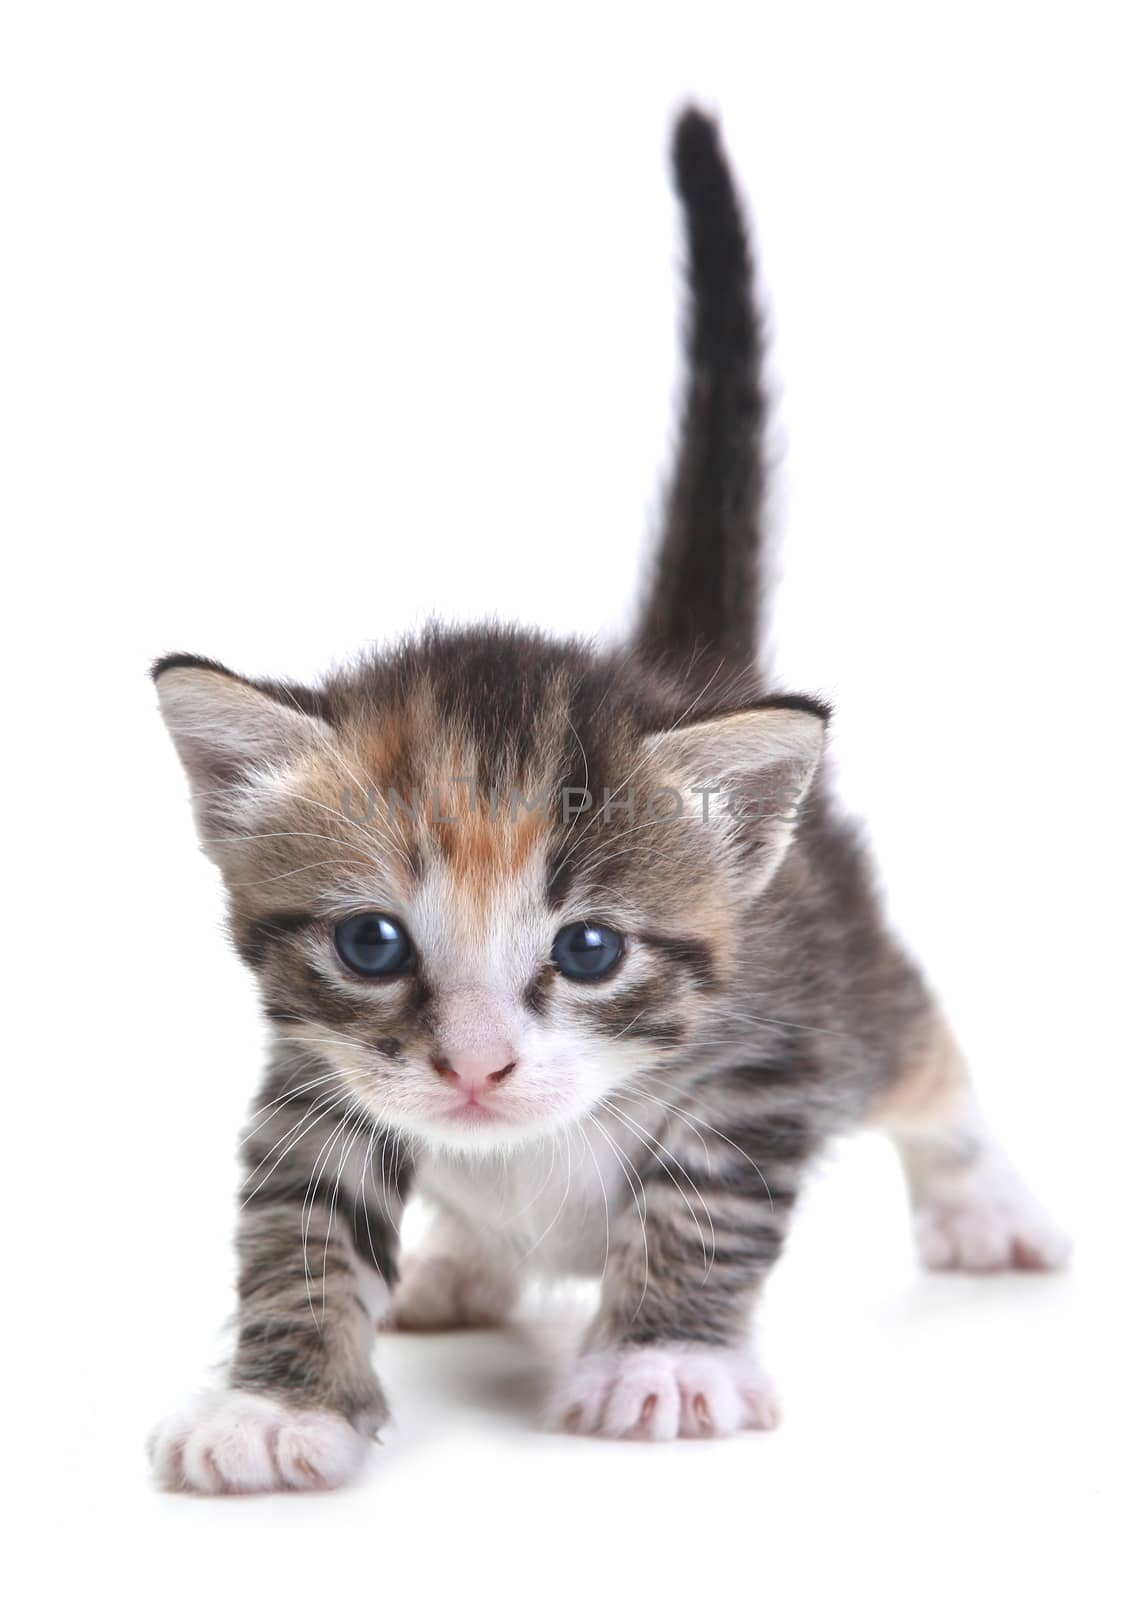 Kitten on White Background by tobkatrina